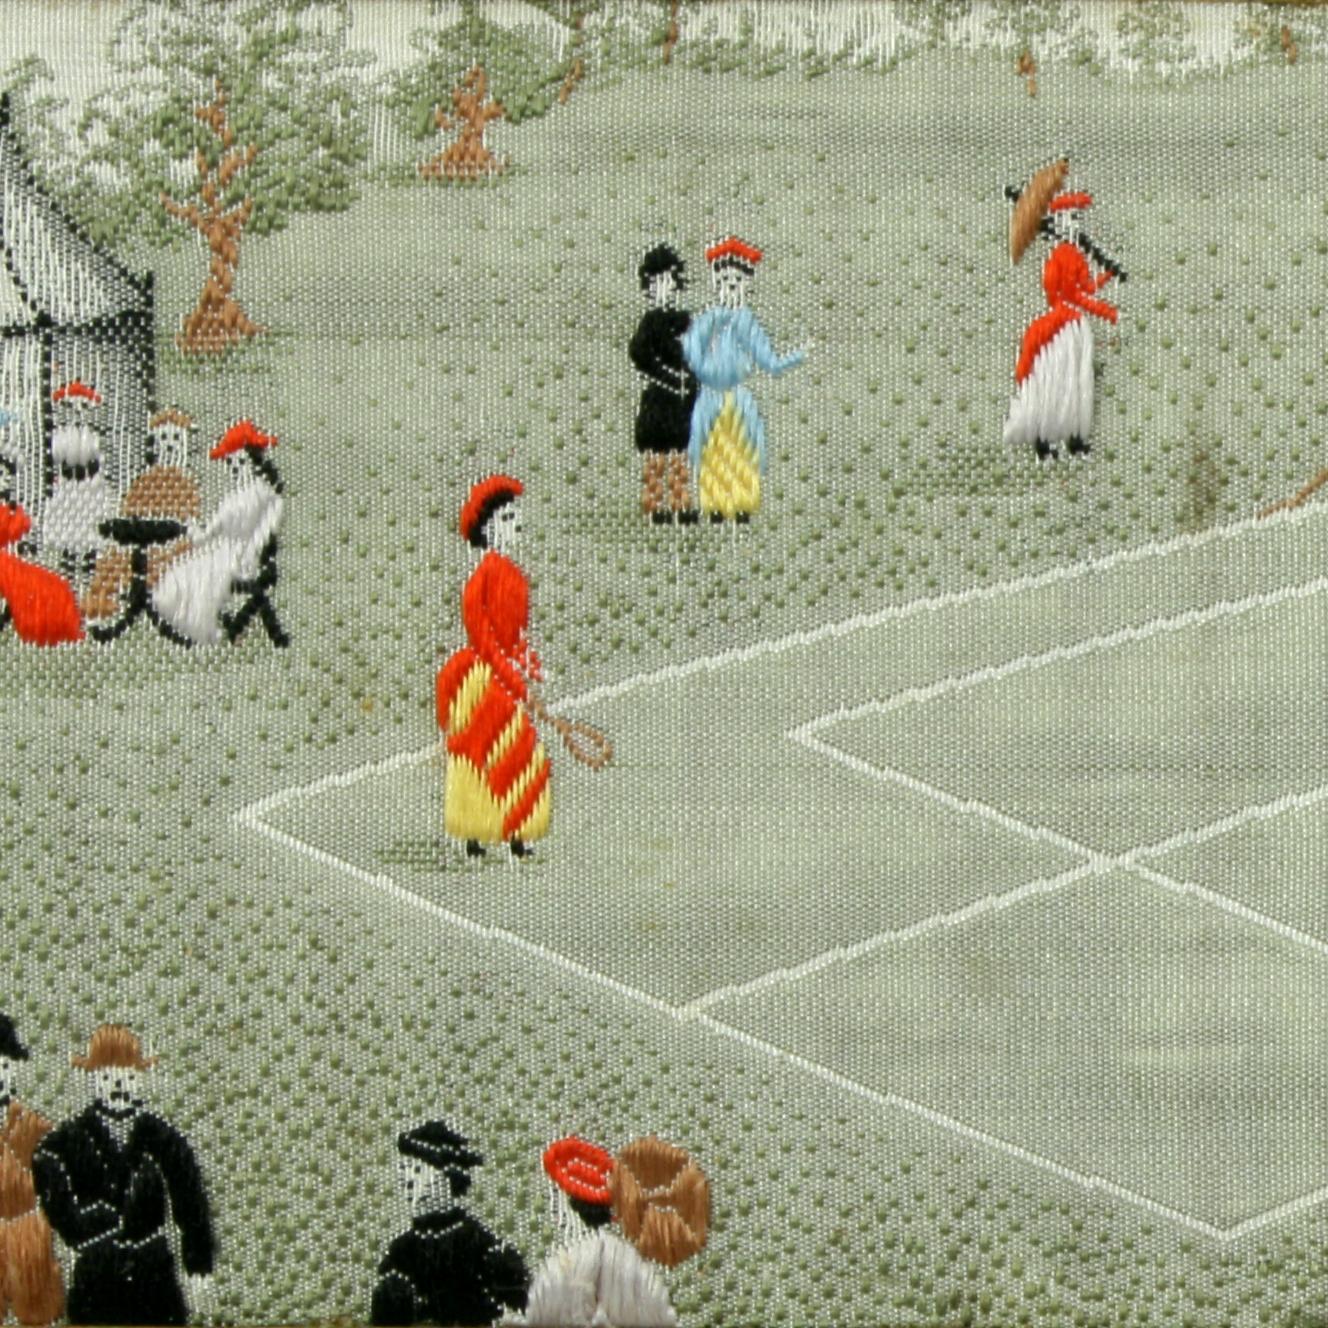 English Stevengraph, a Tennis Match, the First Set